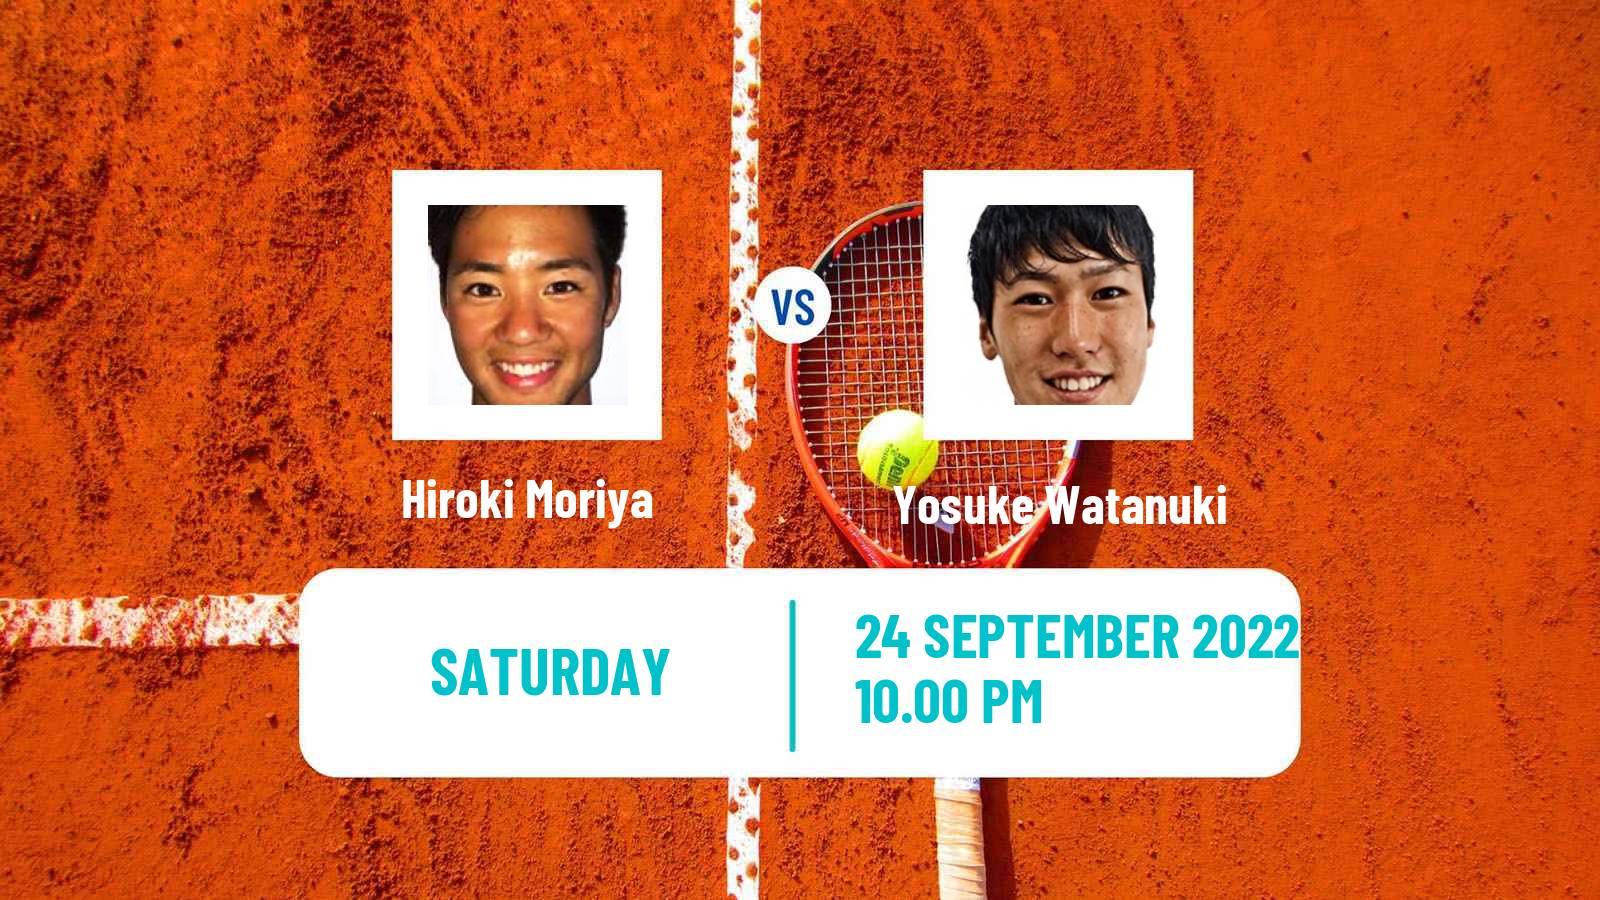 Tennis ATP Seoul Hiroki Moriya - Yosuke Watanuki